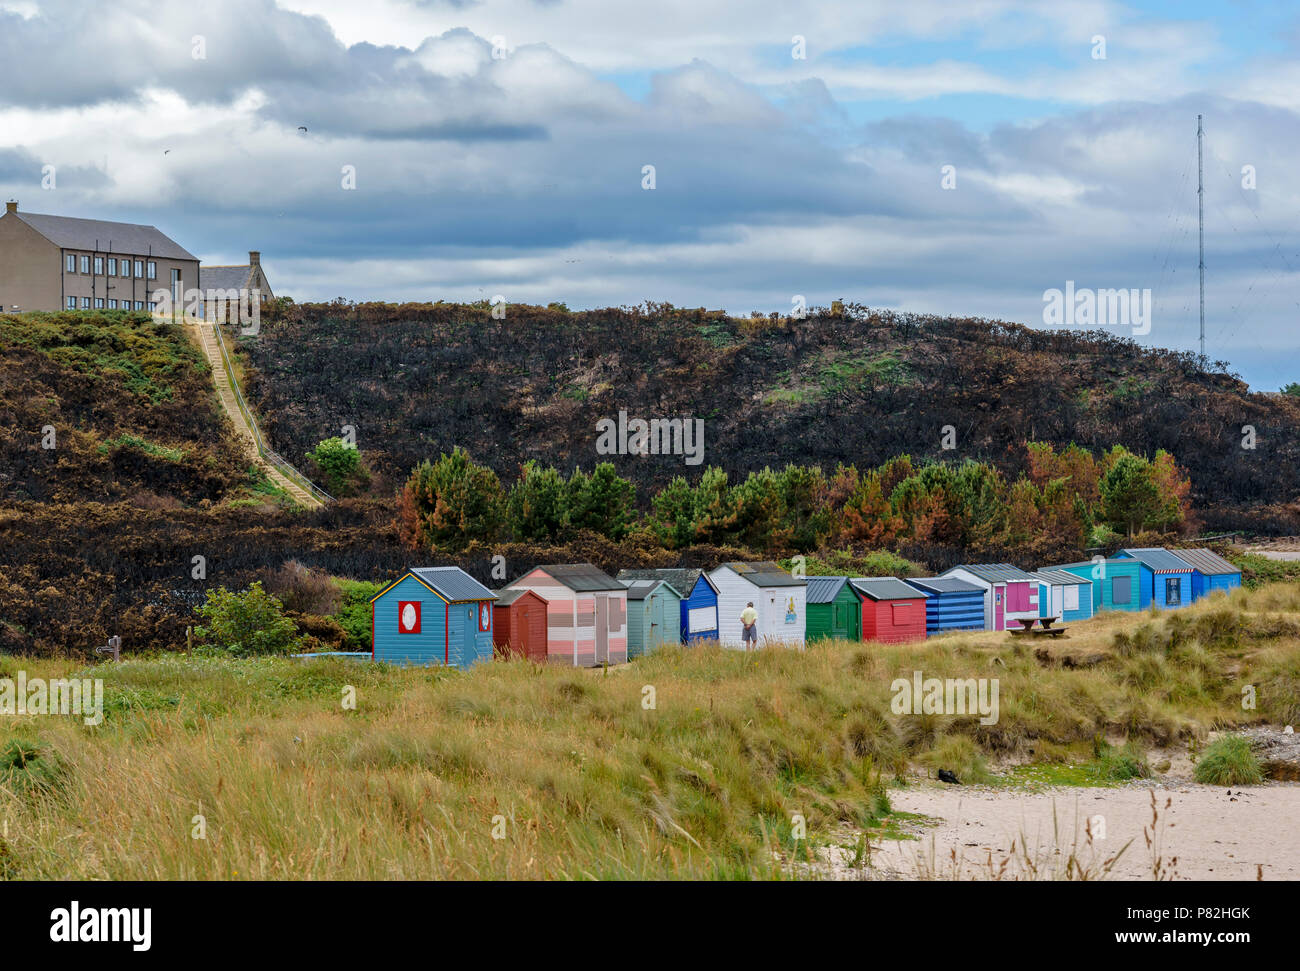 HOPEMAN Moray in Schottland Strand Hütten oder CHALETS ÜBERSEHEN DURCH BEREICH DES VERBRANNTEN GINSTER UND VEGETATION WEGEN WILDFIRE Stockfoto